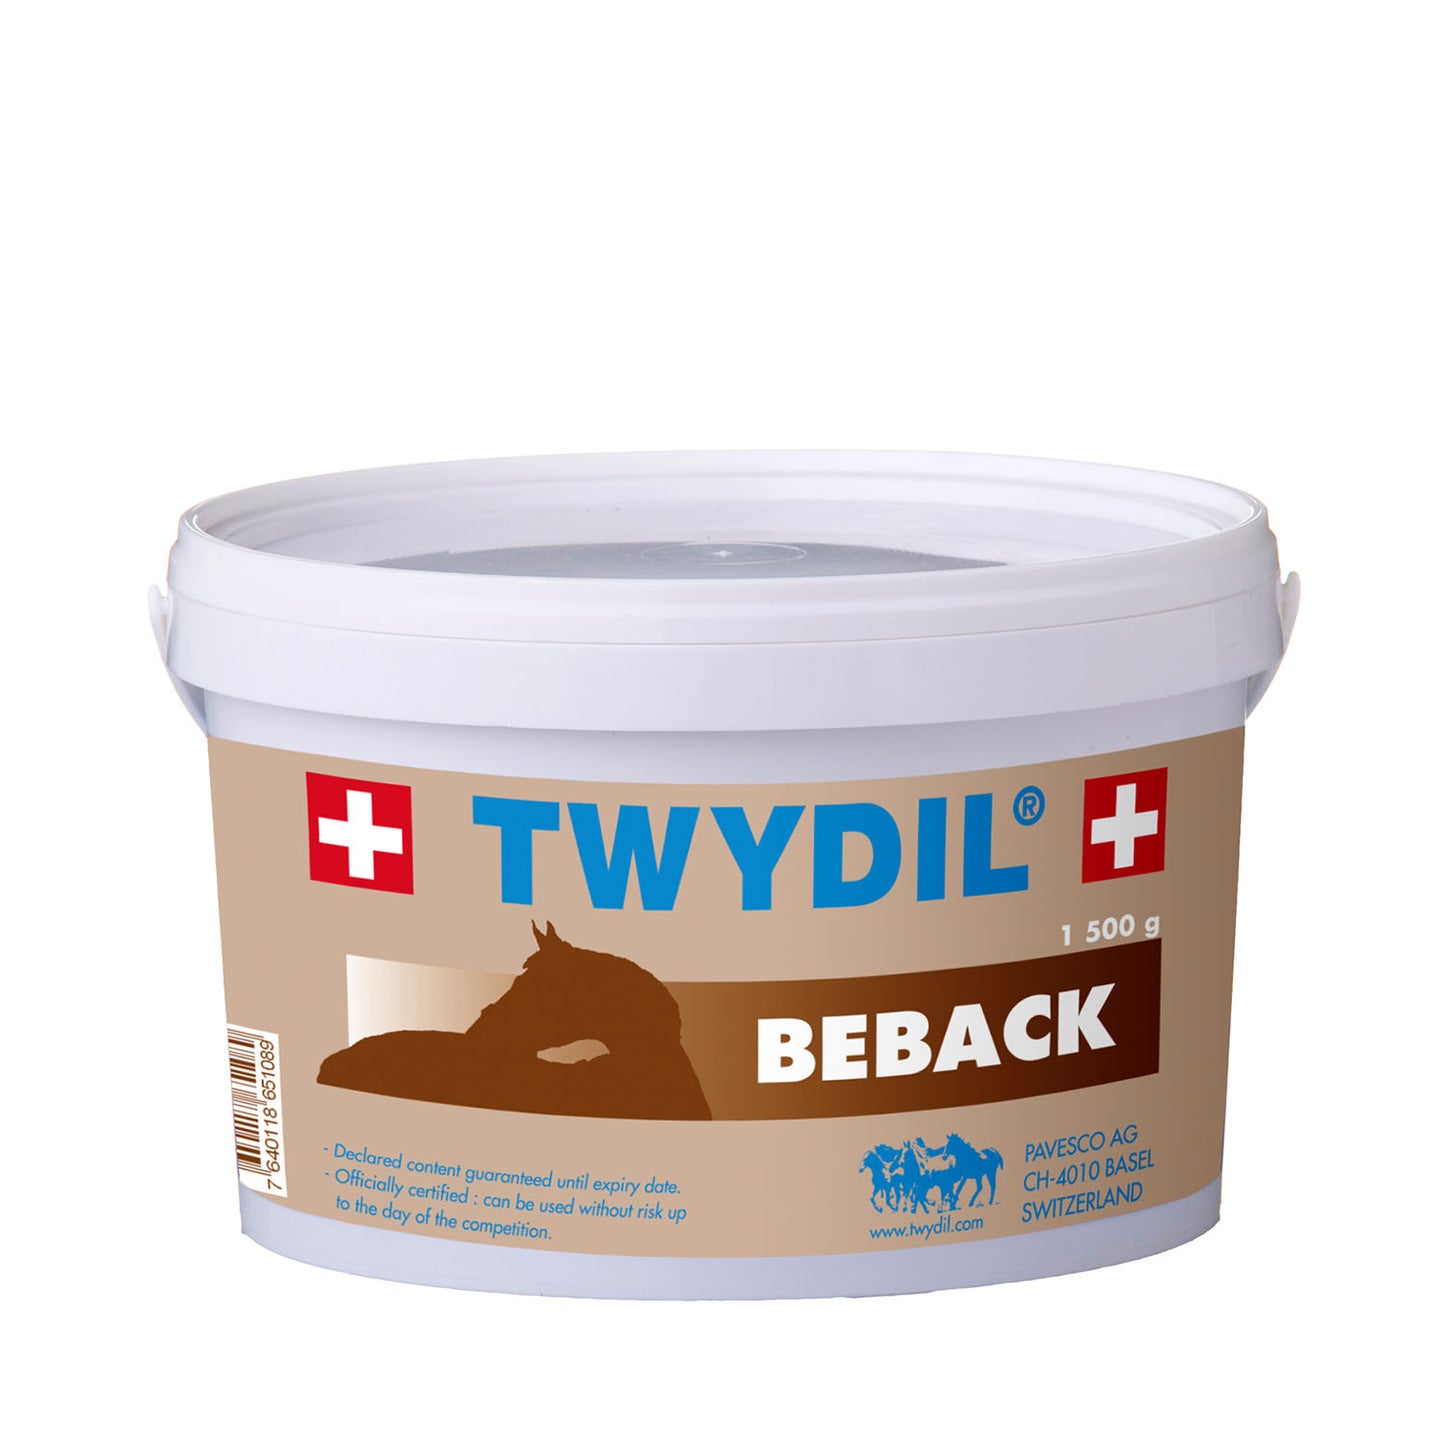 Twydil Beback 1,5kg